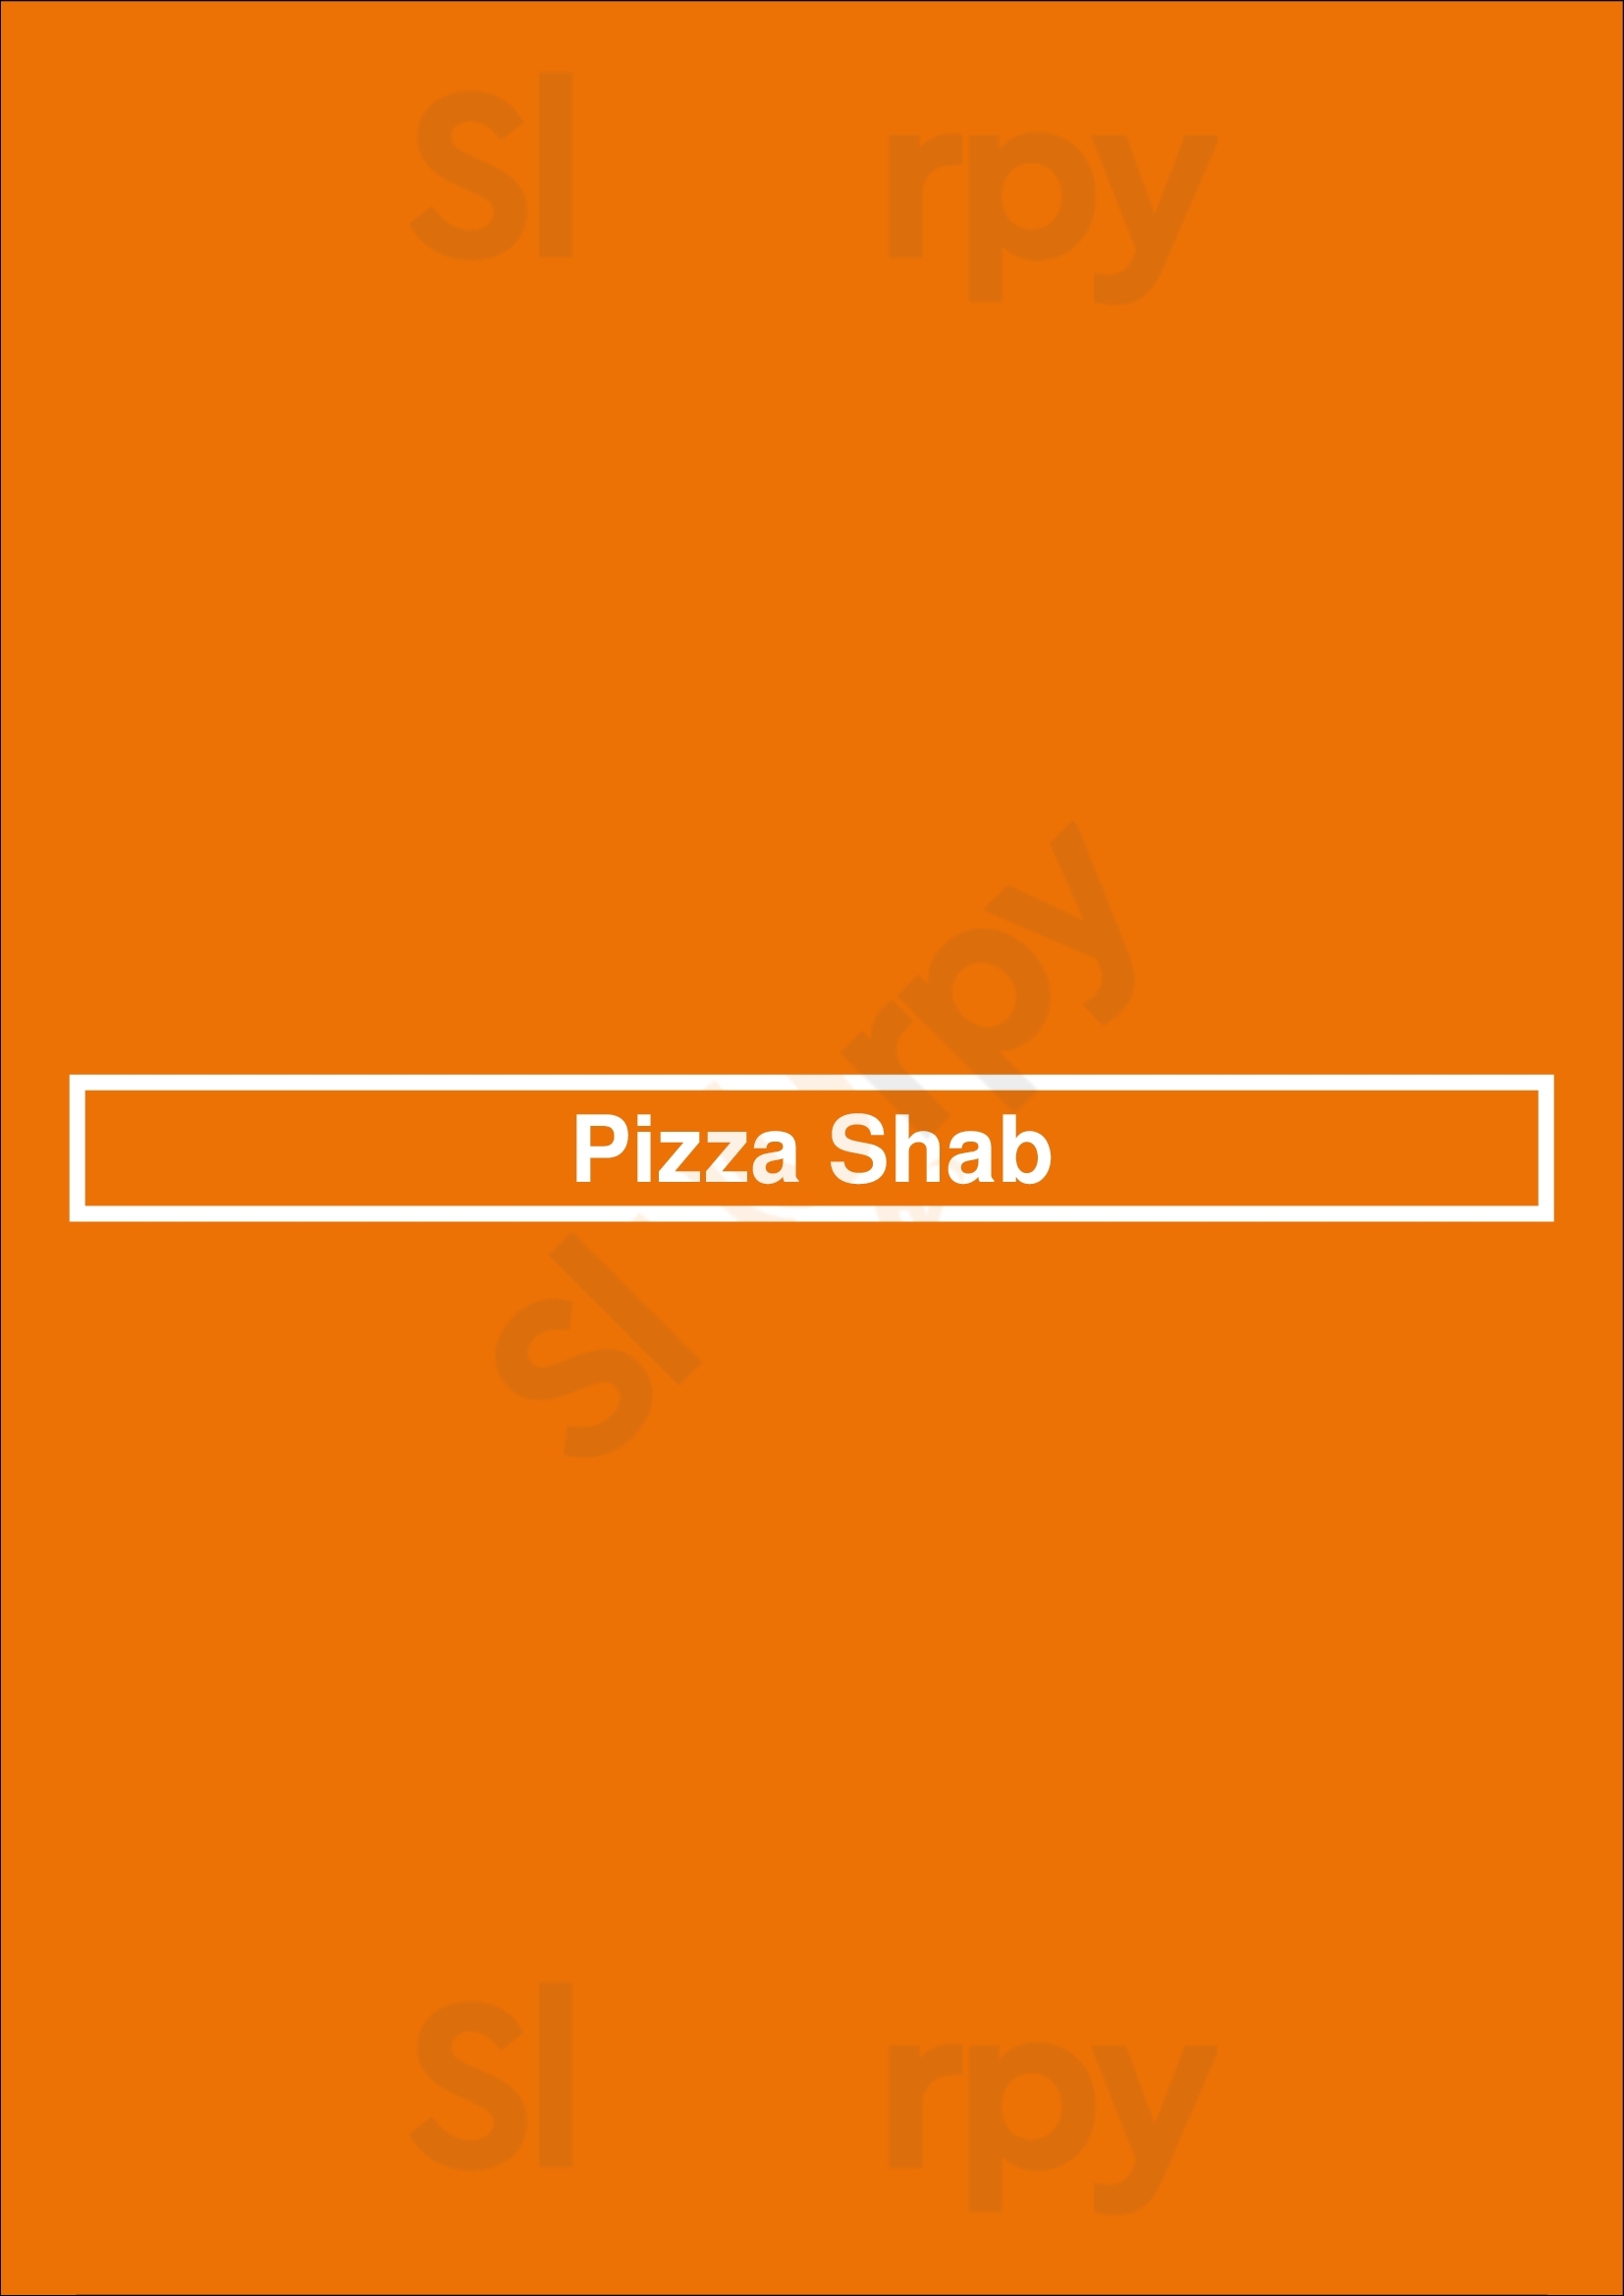 Pizza Shab Toronto Menu - 1